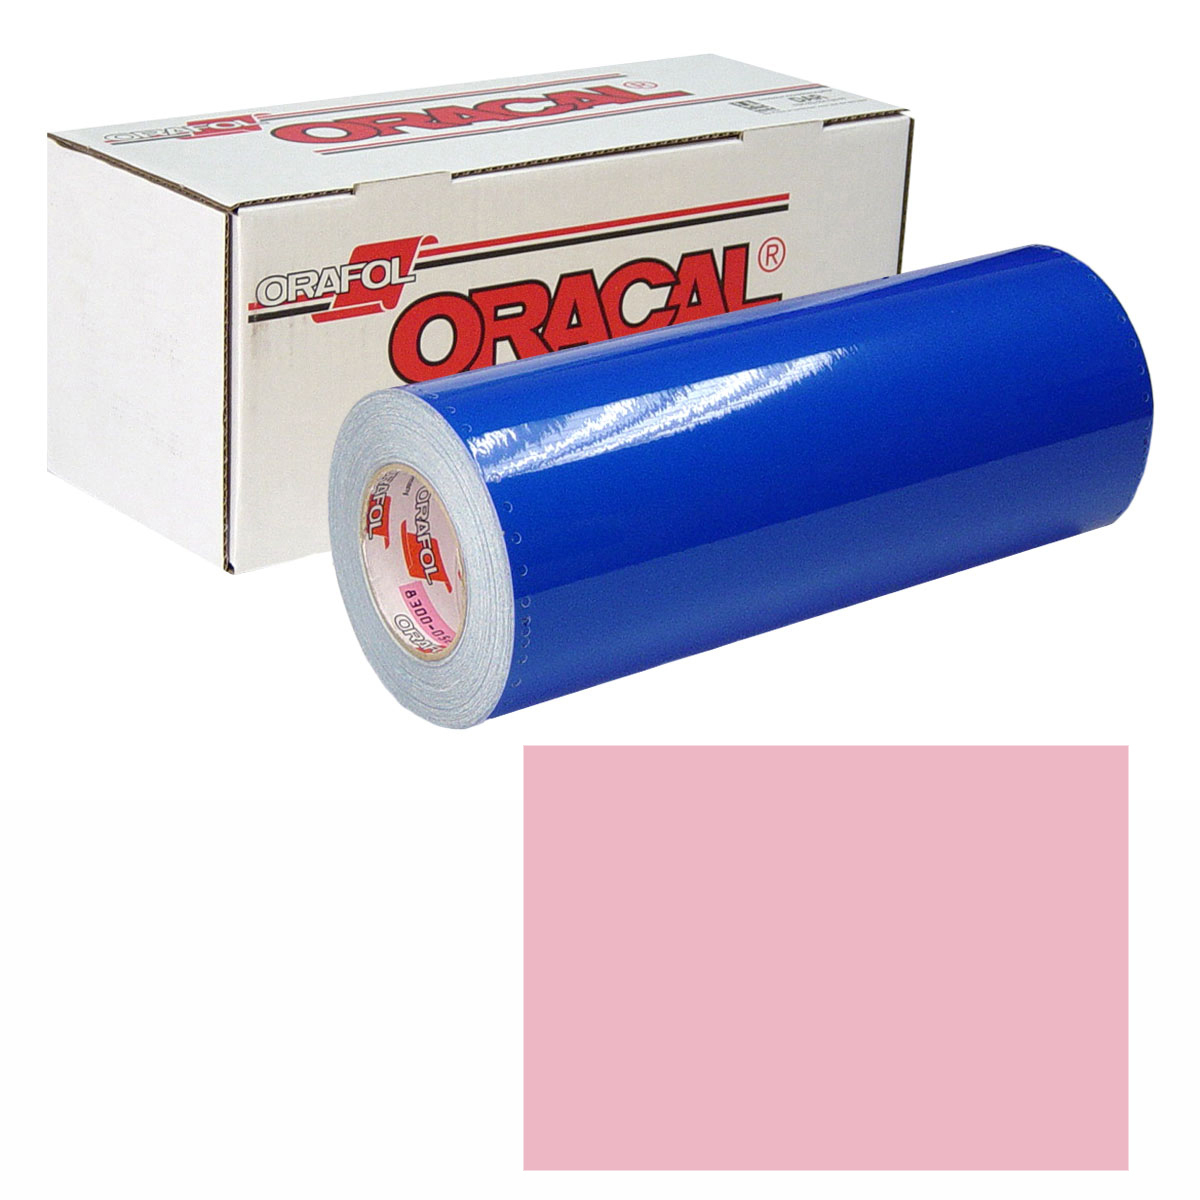 ORACAL 631 Unp 48in X 50yd 429 Carnation Pink